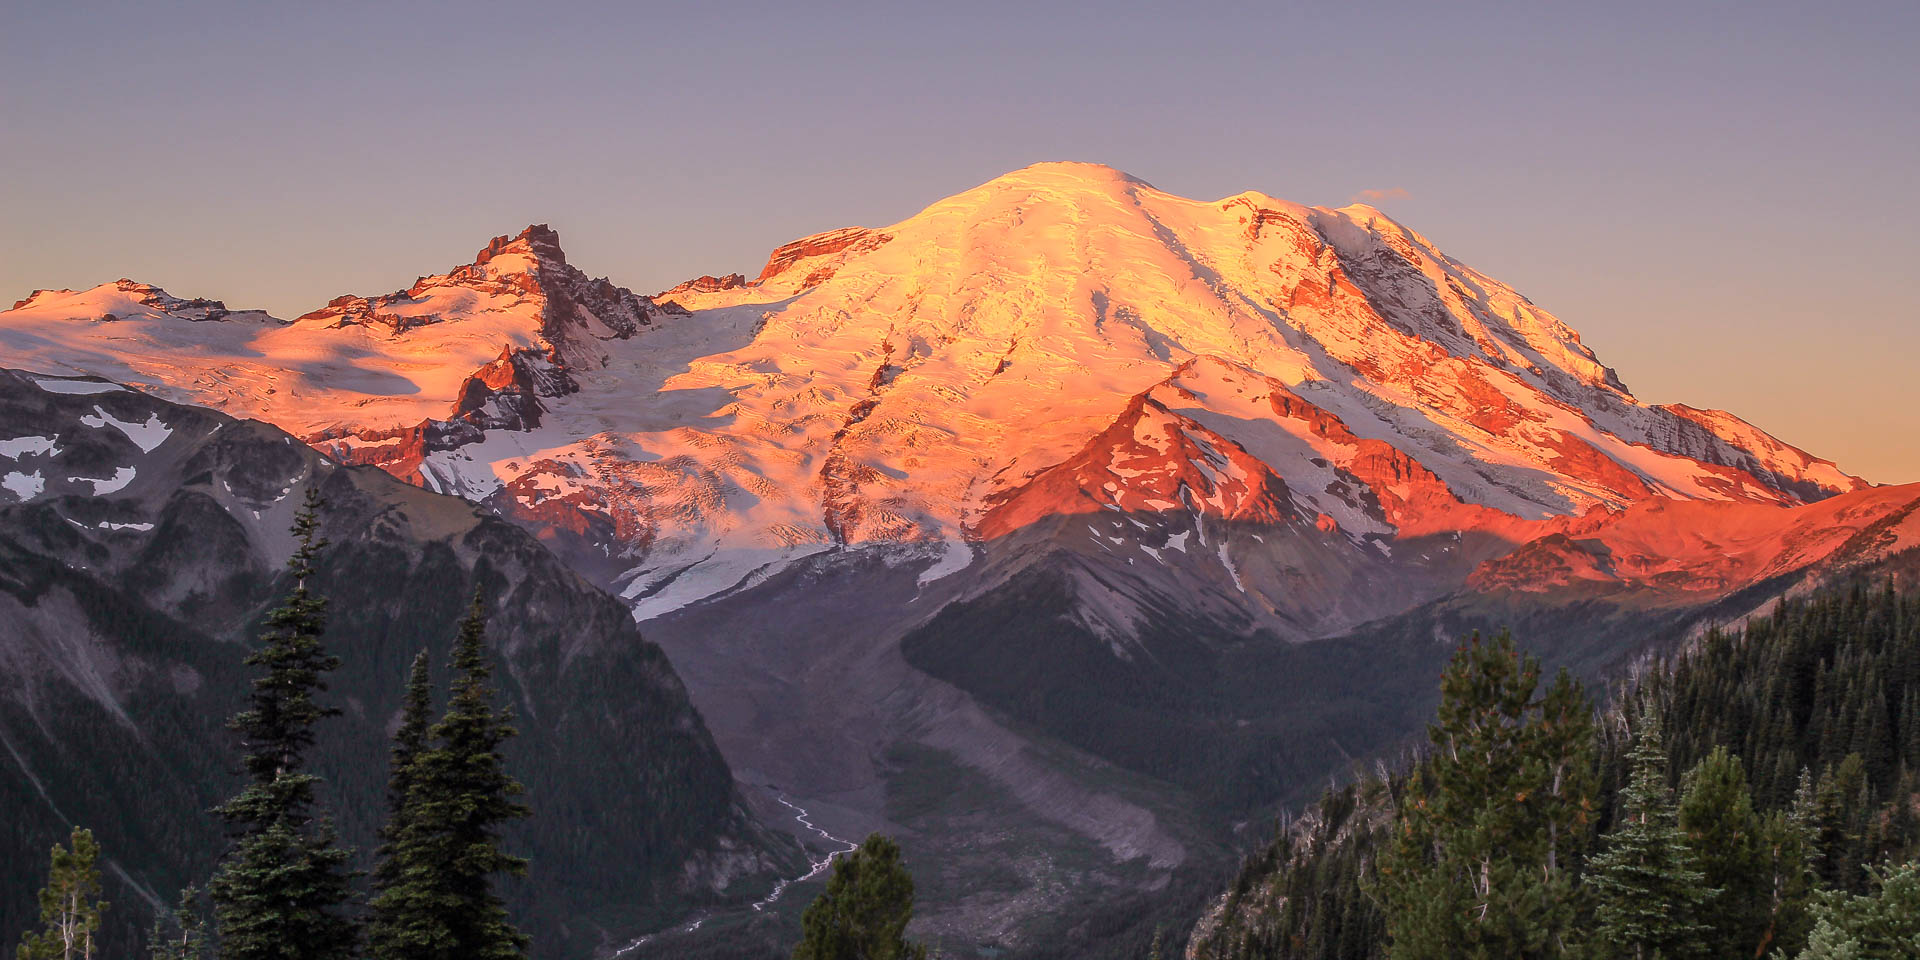 Dawn on Mount Rainier